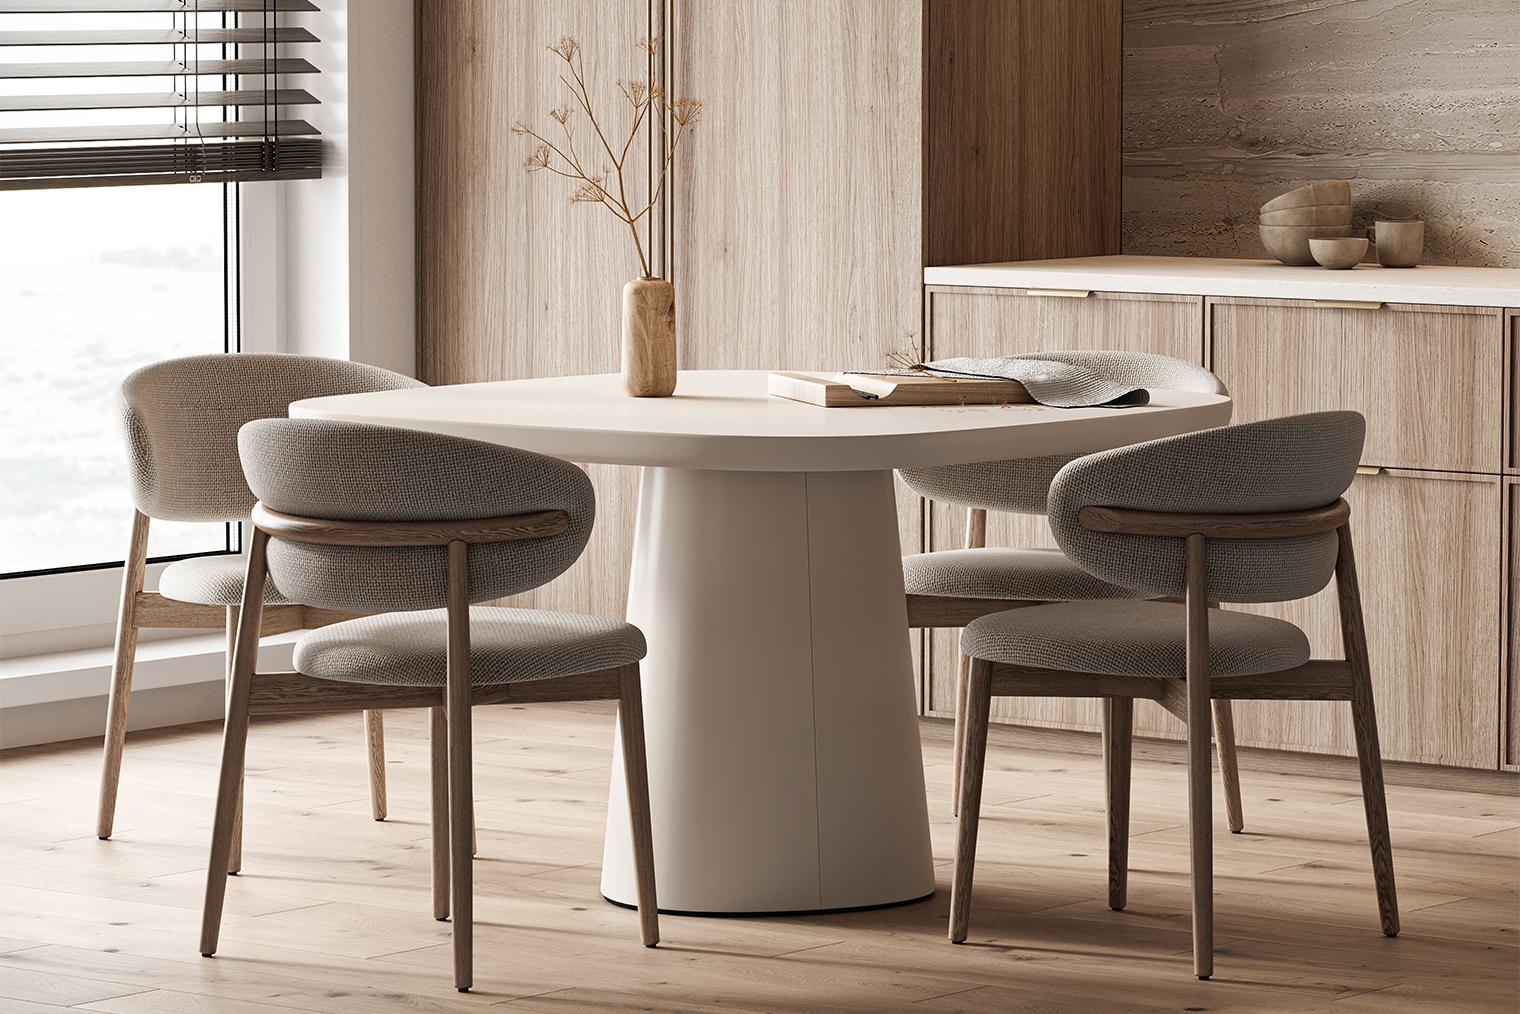 Чтобы создать столовую зону в стиле джапанди, возьмите круглый стол неидеальной формы, округлые стулья и вазу с засушенным цветком. Фотография: V1ktoria / Shutterstock